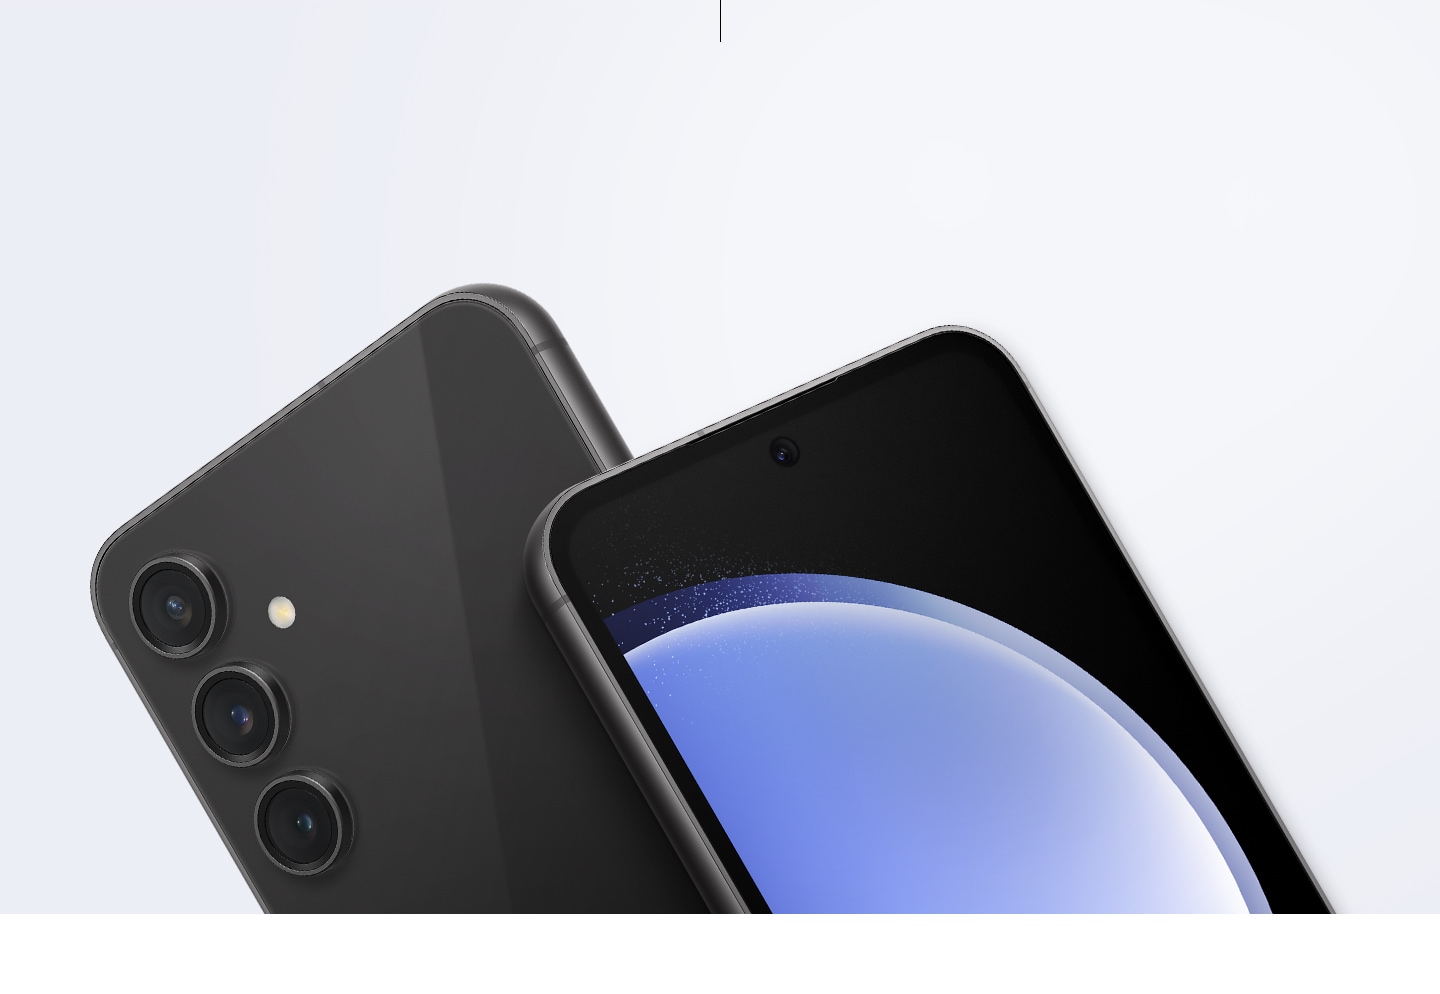 Два устройства Galaxy S23 FE. Одно из них изображено спереди с синими обоями на экране, а другое - сзади, где видна тыльная камера.